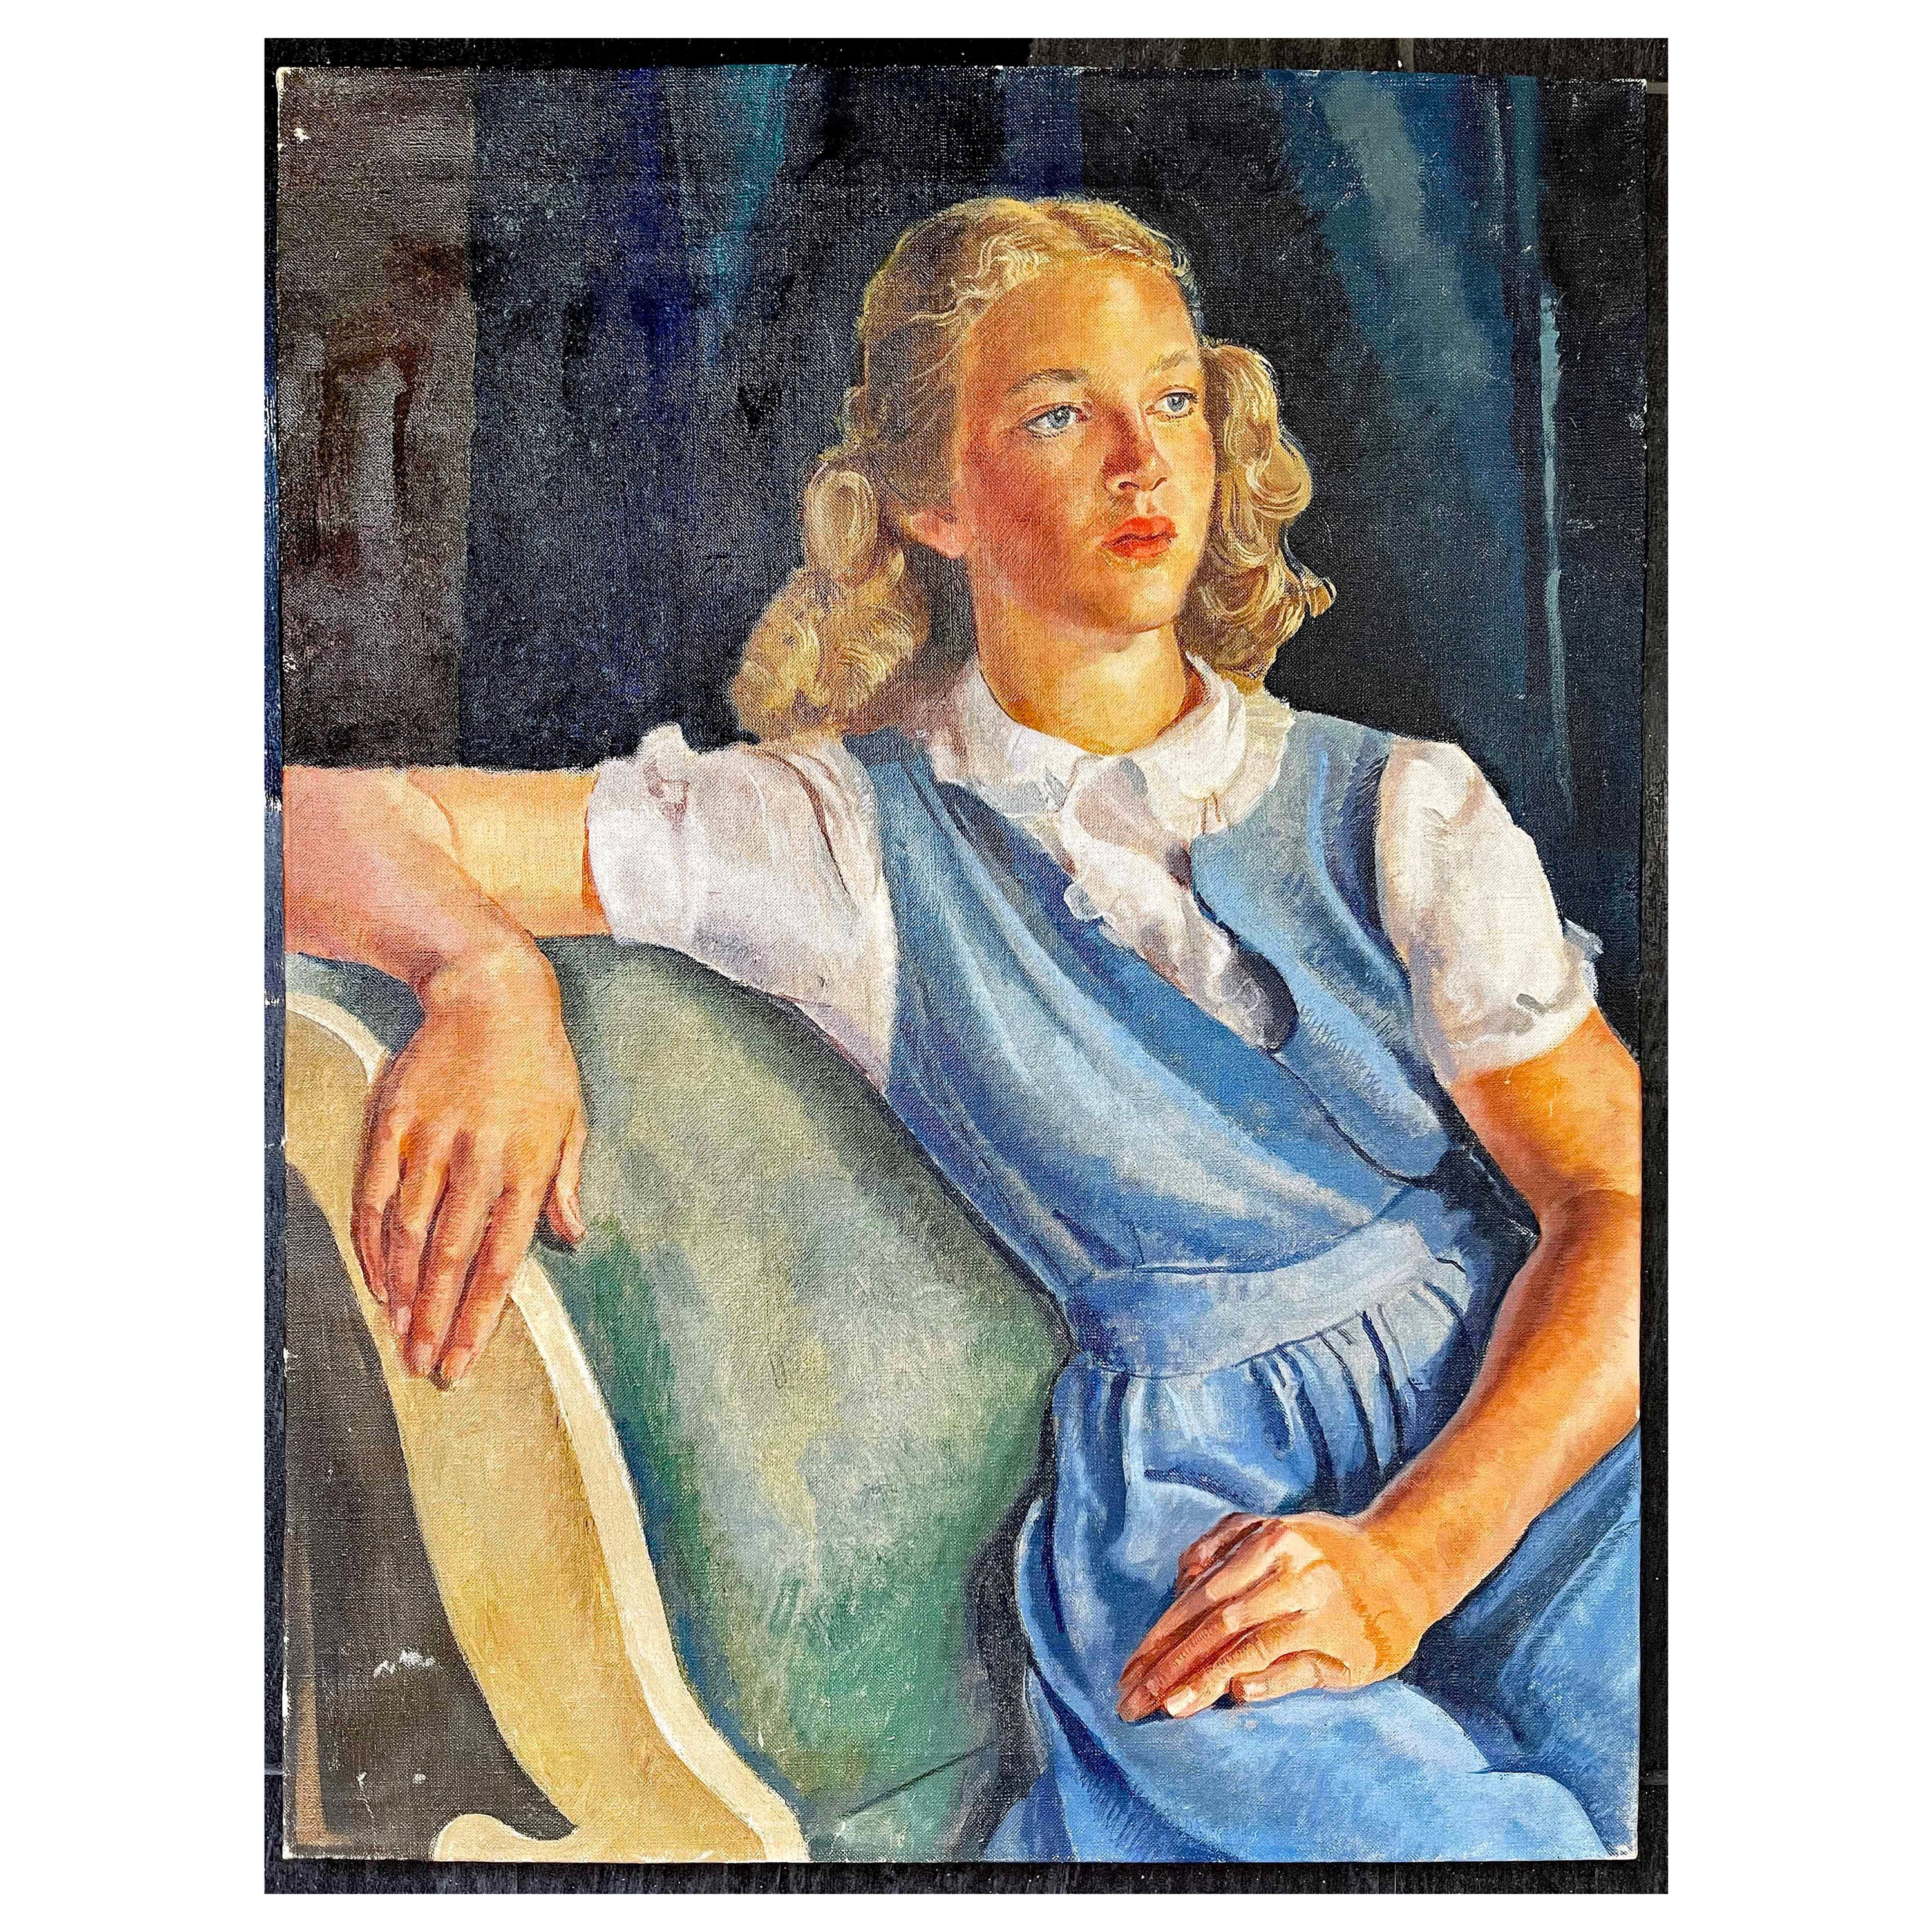 « Jeune femme en robe bleue », superbe portrait de femme blonde des années 1940